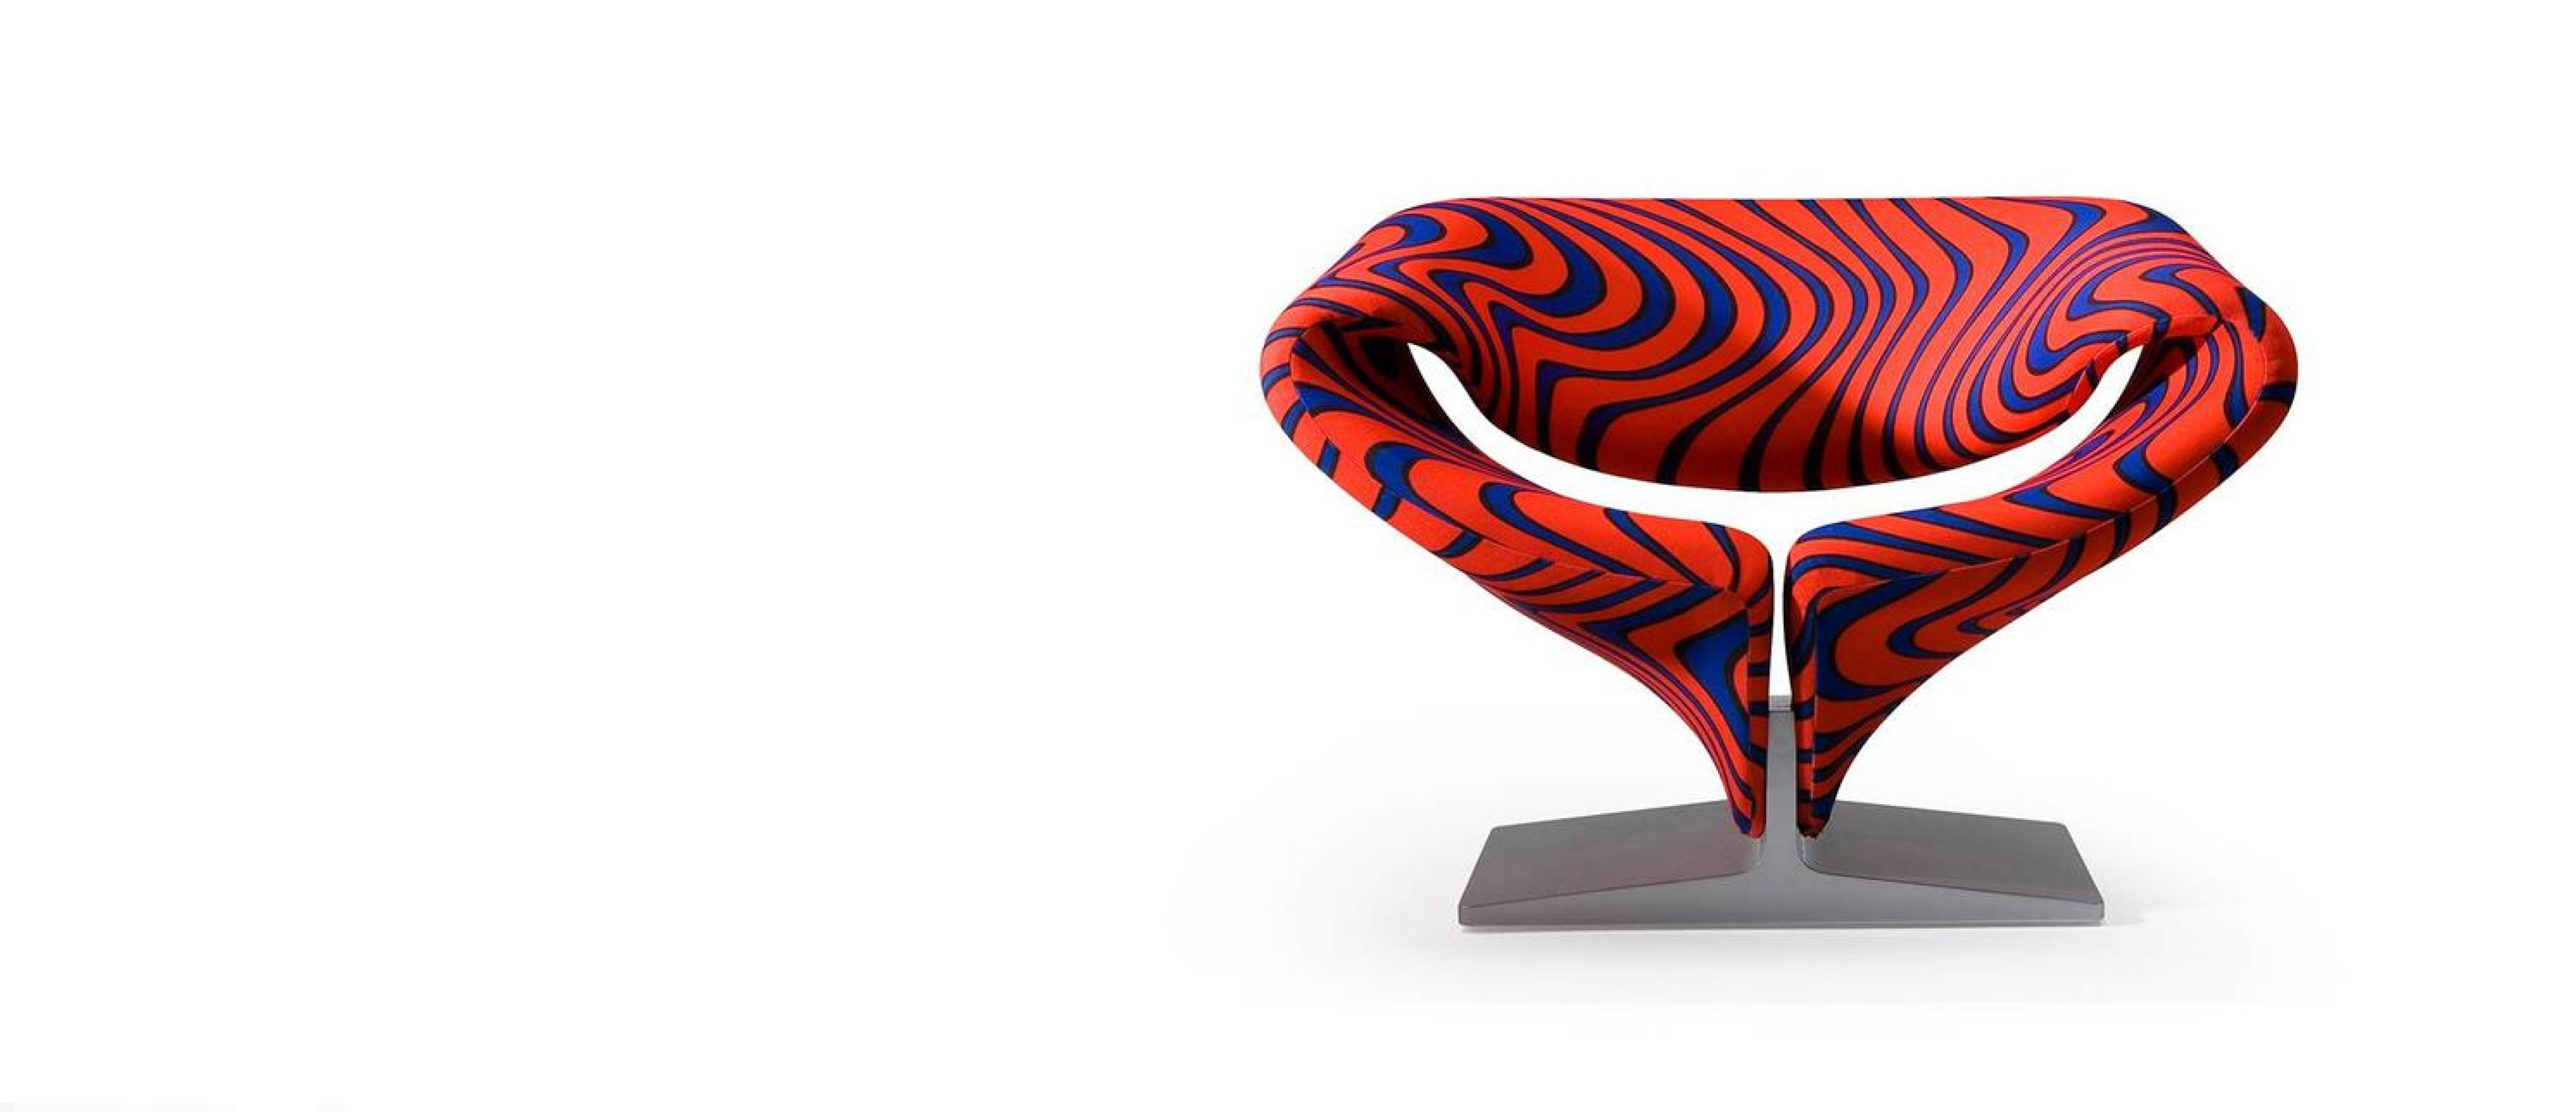 Artifort Ribbon: de ontwerper van deze stoel verdient een lintje icon category image